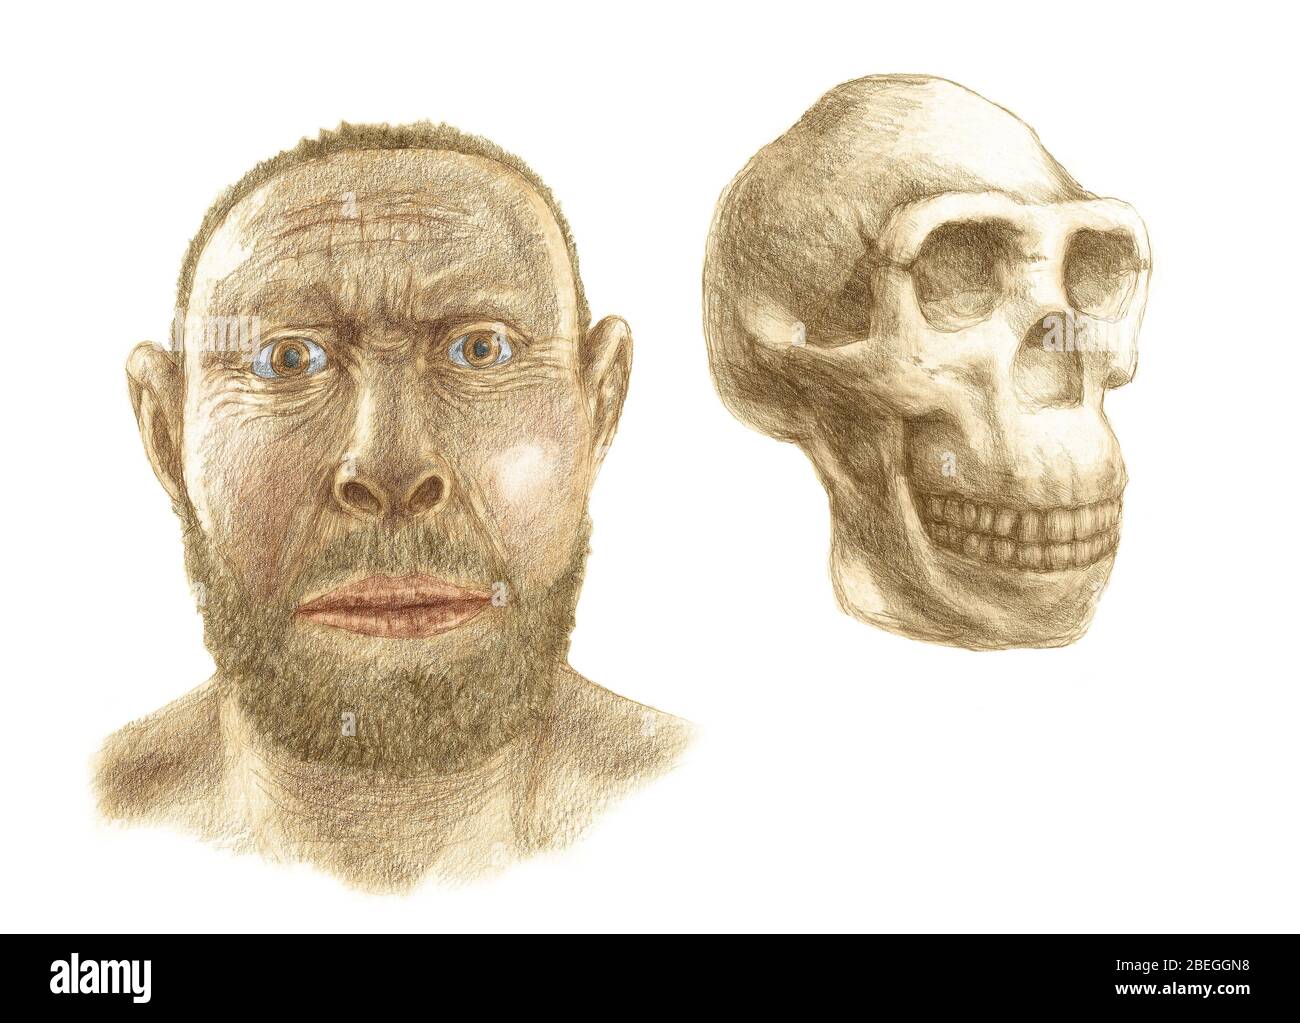 Ricostruzione del cranio e del viso dell'Homo erectus Foto Stock